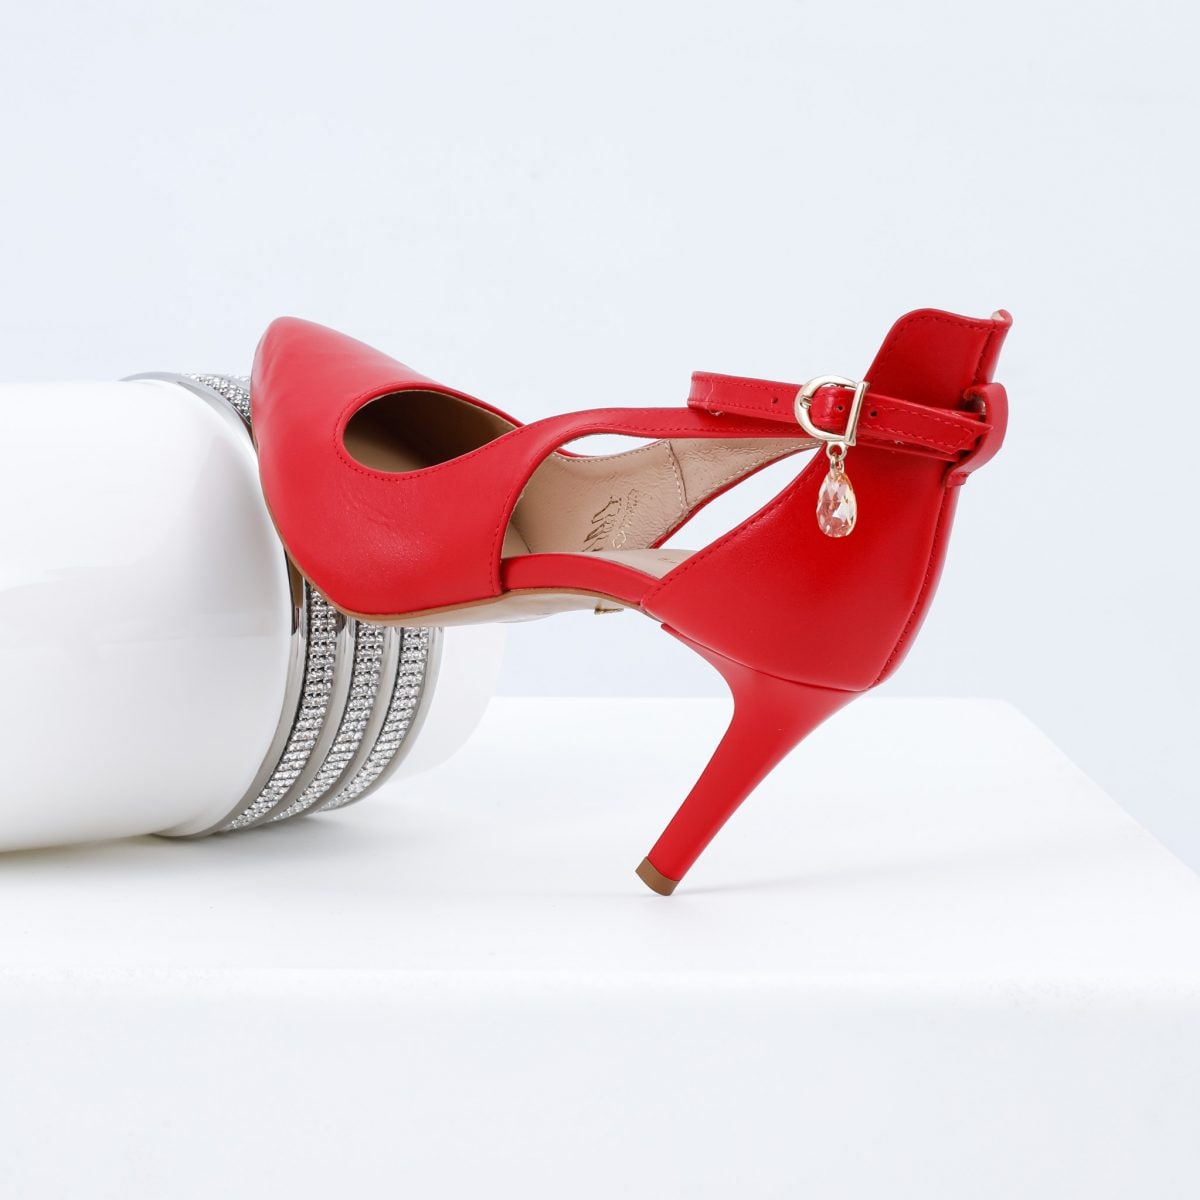 Biele svadobné topánky? Vyniknite a postavte na fuksiovú, červenú alebo žltú farbu!